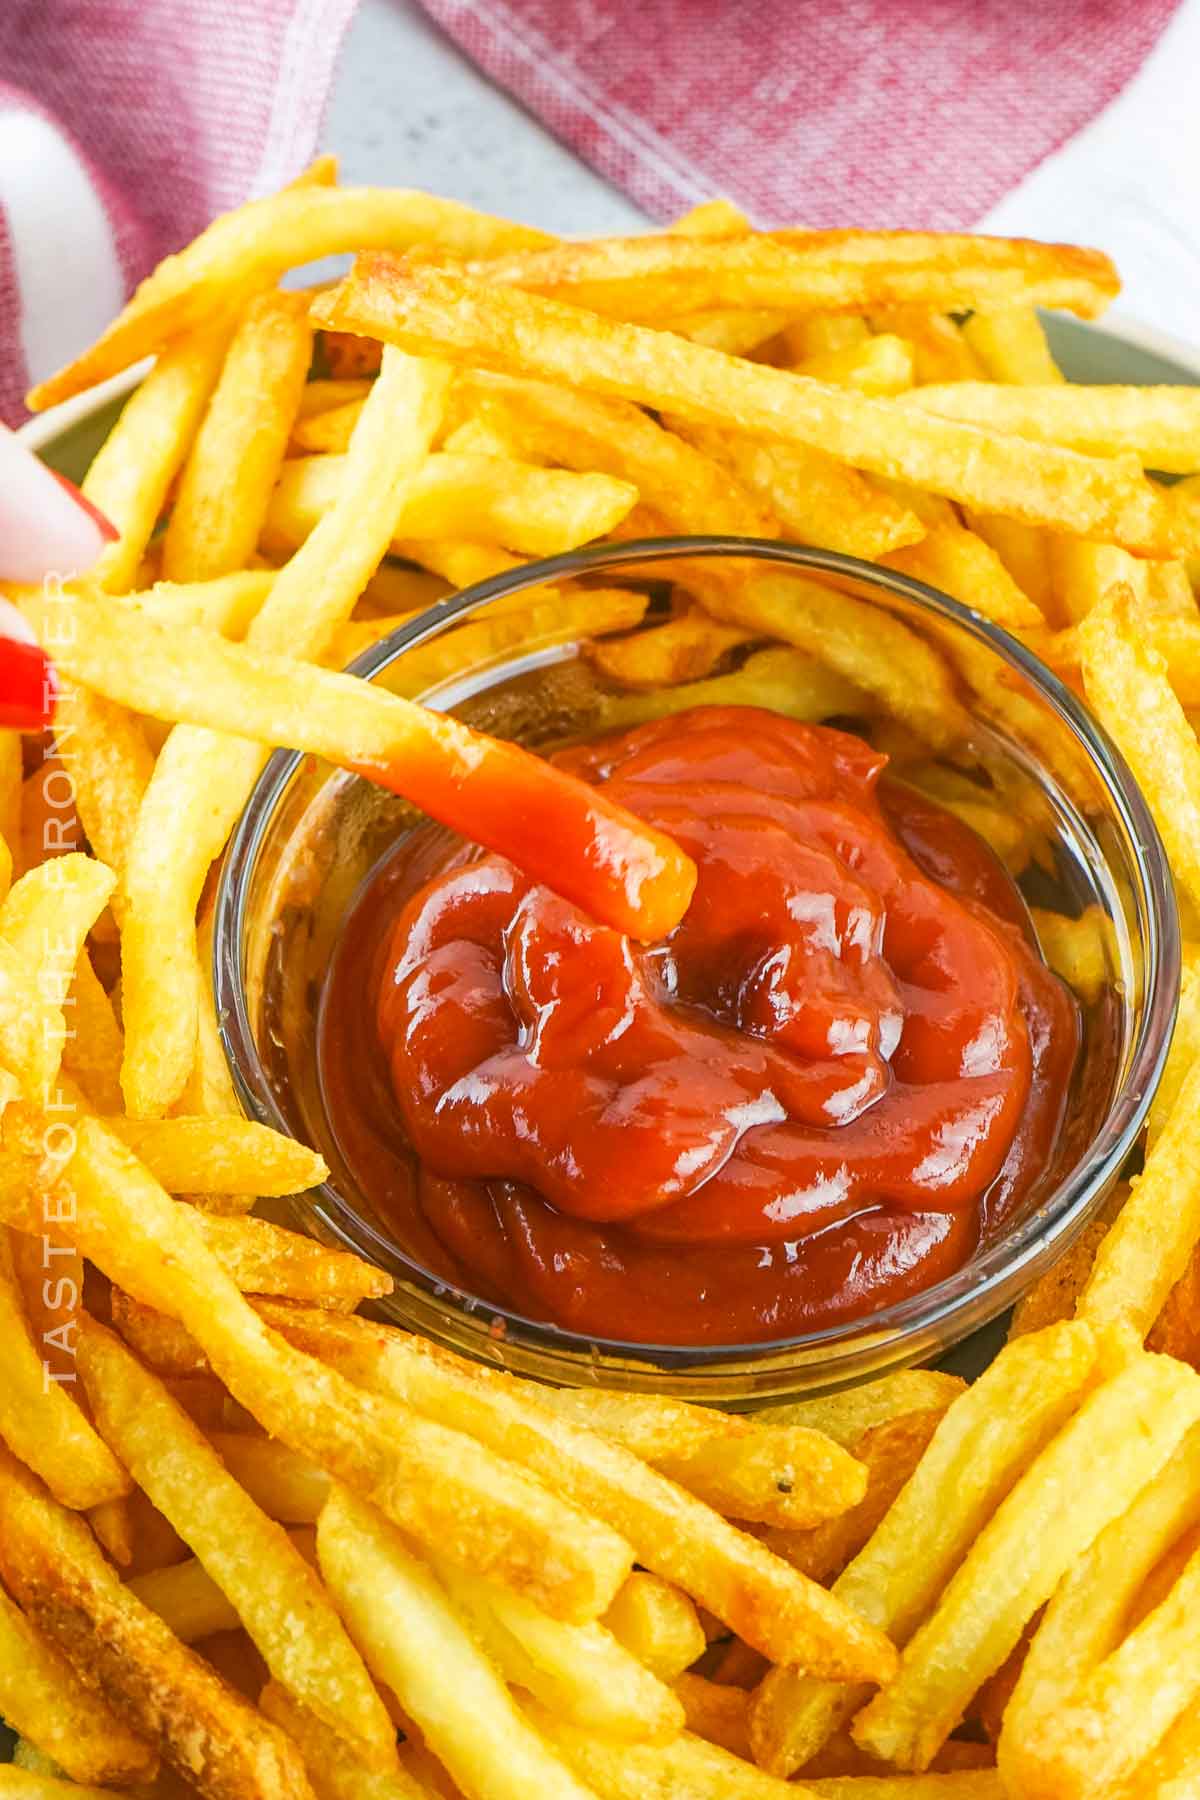 easy fries recipe